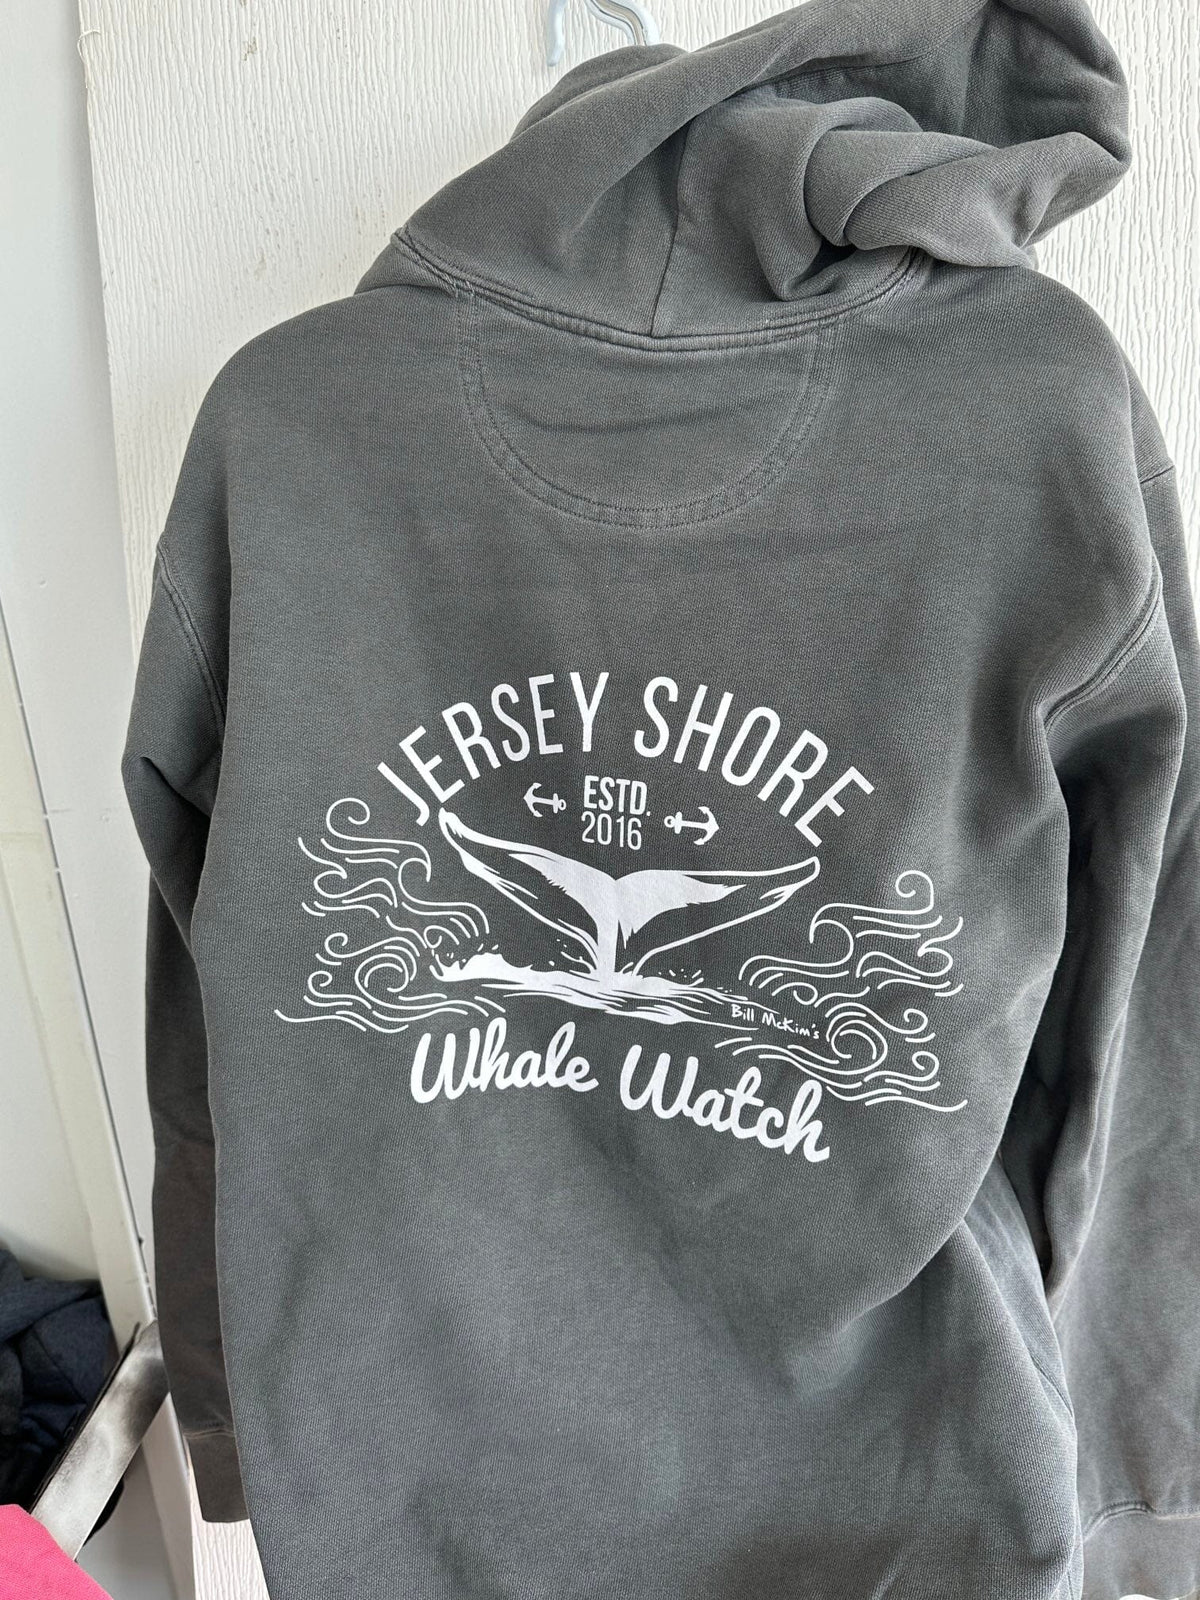 Canyon Run Sweatshirts Jersey Shore Whale Watch Bill McKim Photography -Jersey Shore whale watch tours 